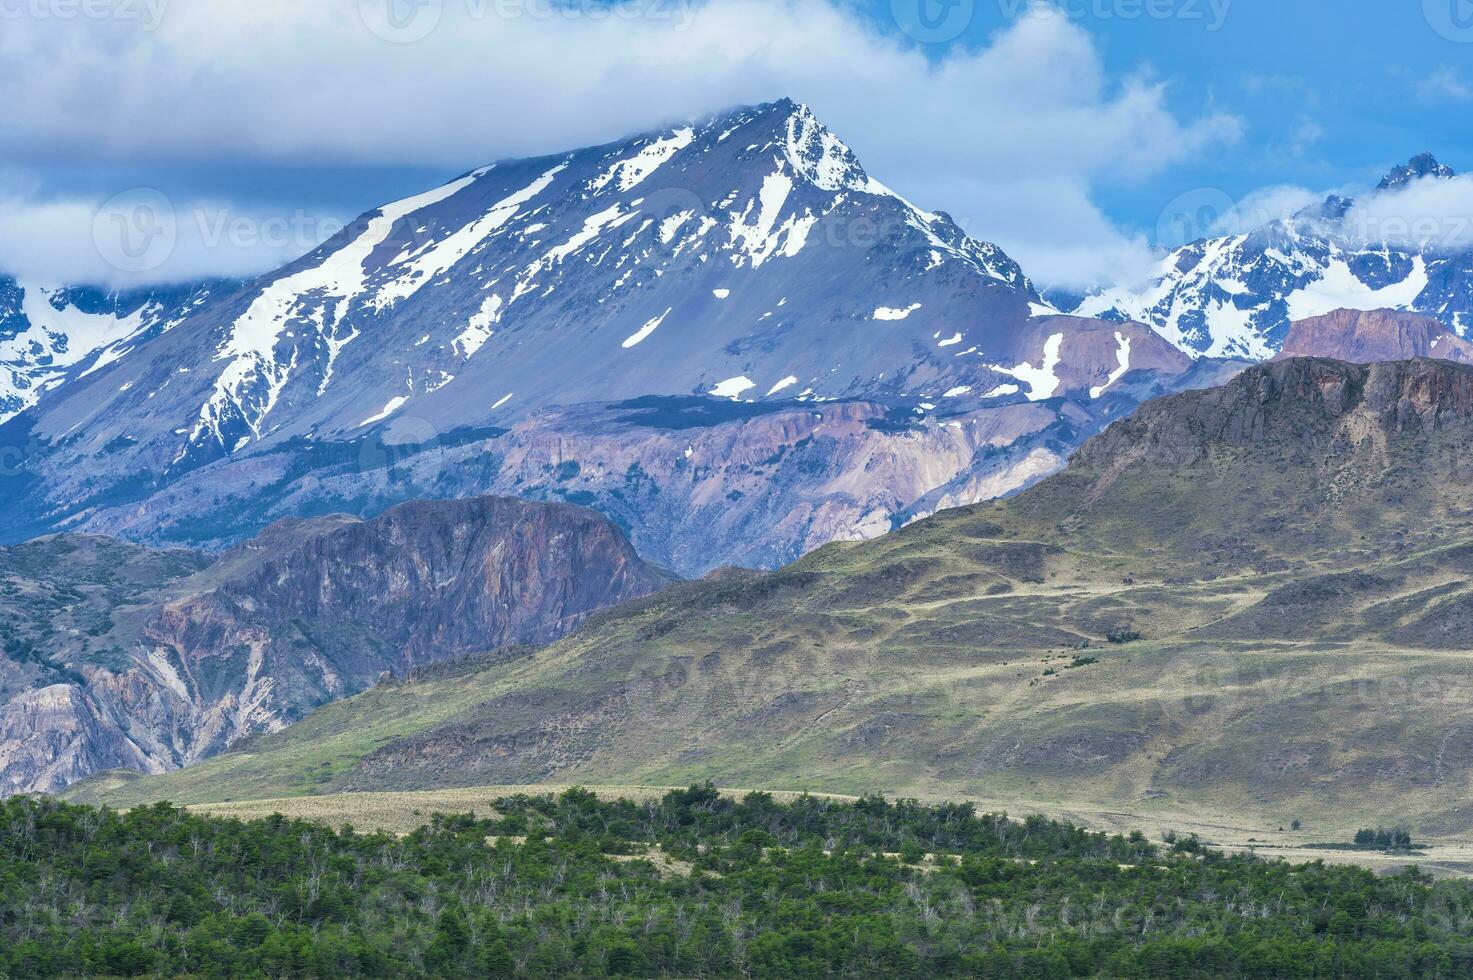 paesaggio montano, patagonia nazionale parco, chacabuco valle vicino cochrane, aysen regione, patagonia, chile foto